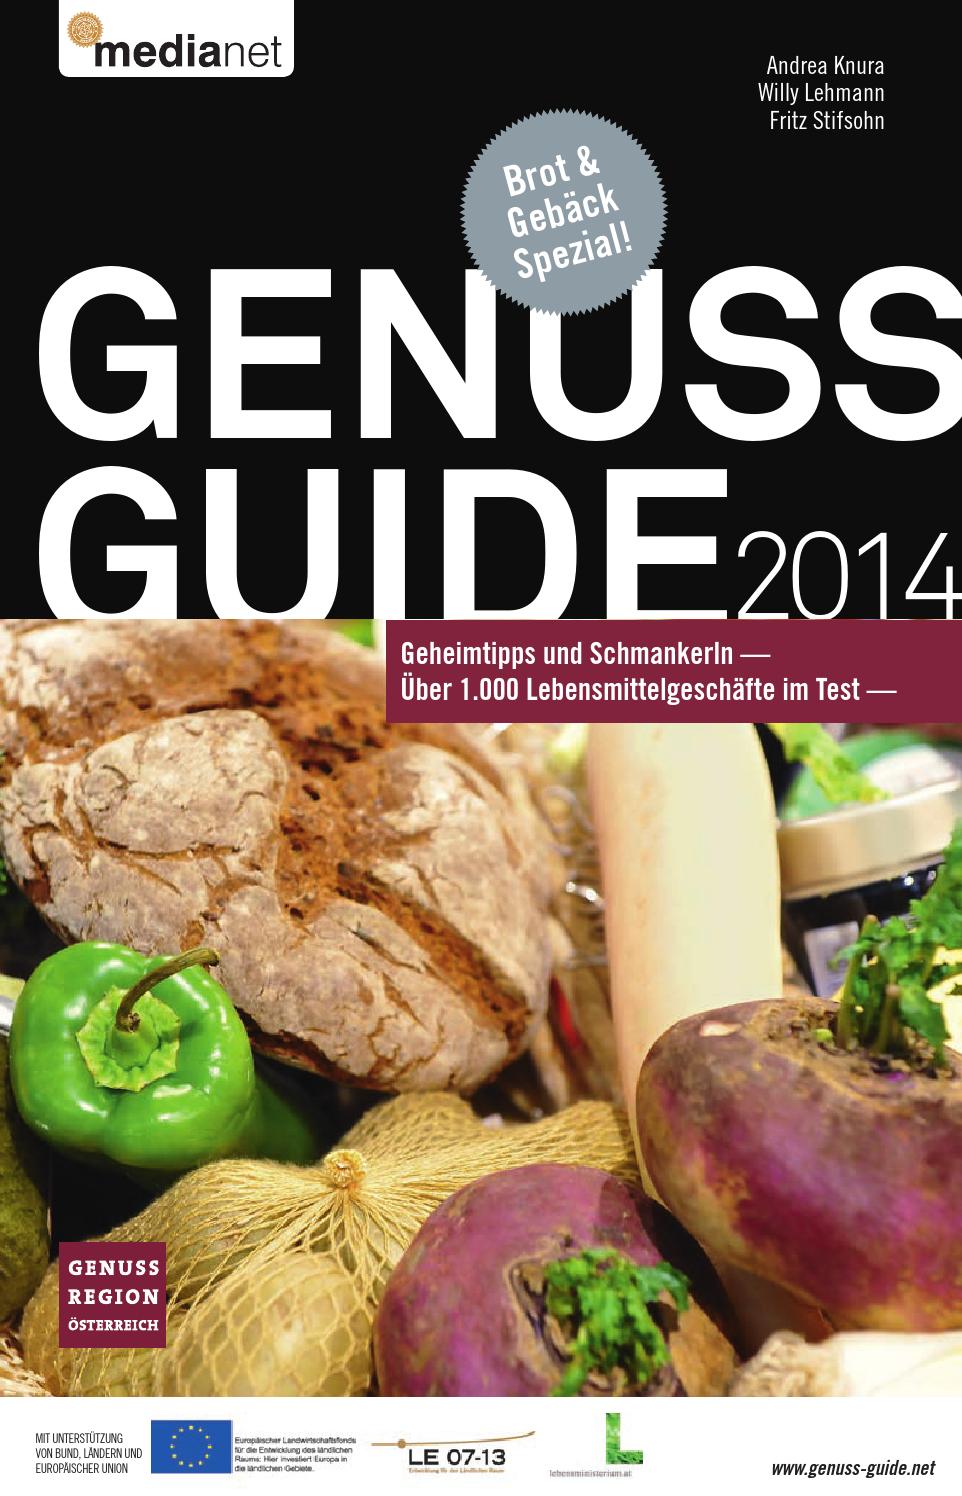 Gartenaccessoires Eisen Frisch Genuss Guide 2014 by Medianet issuu